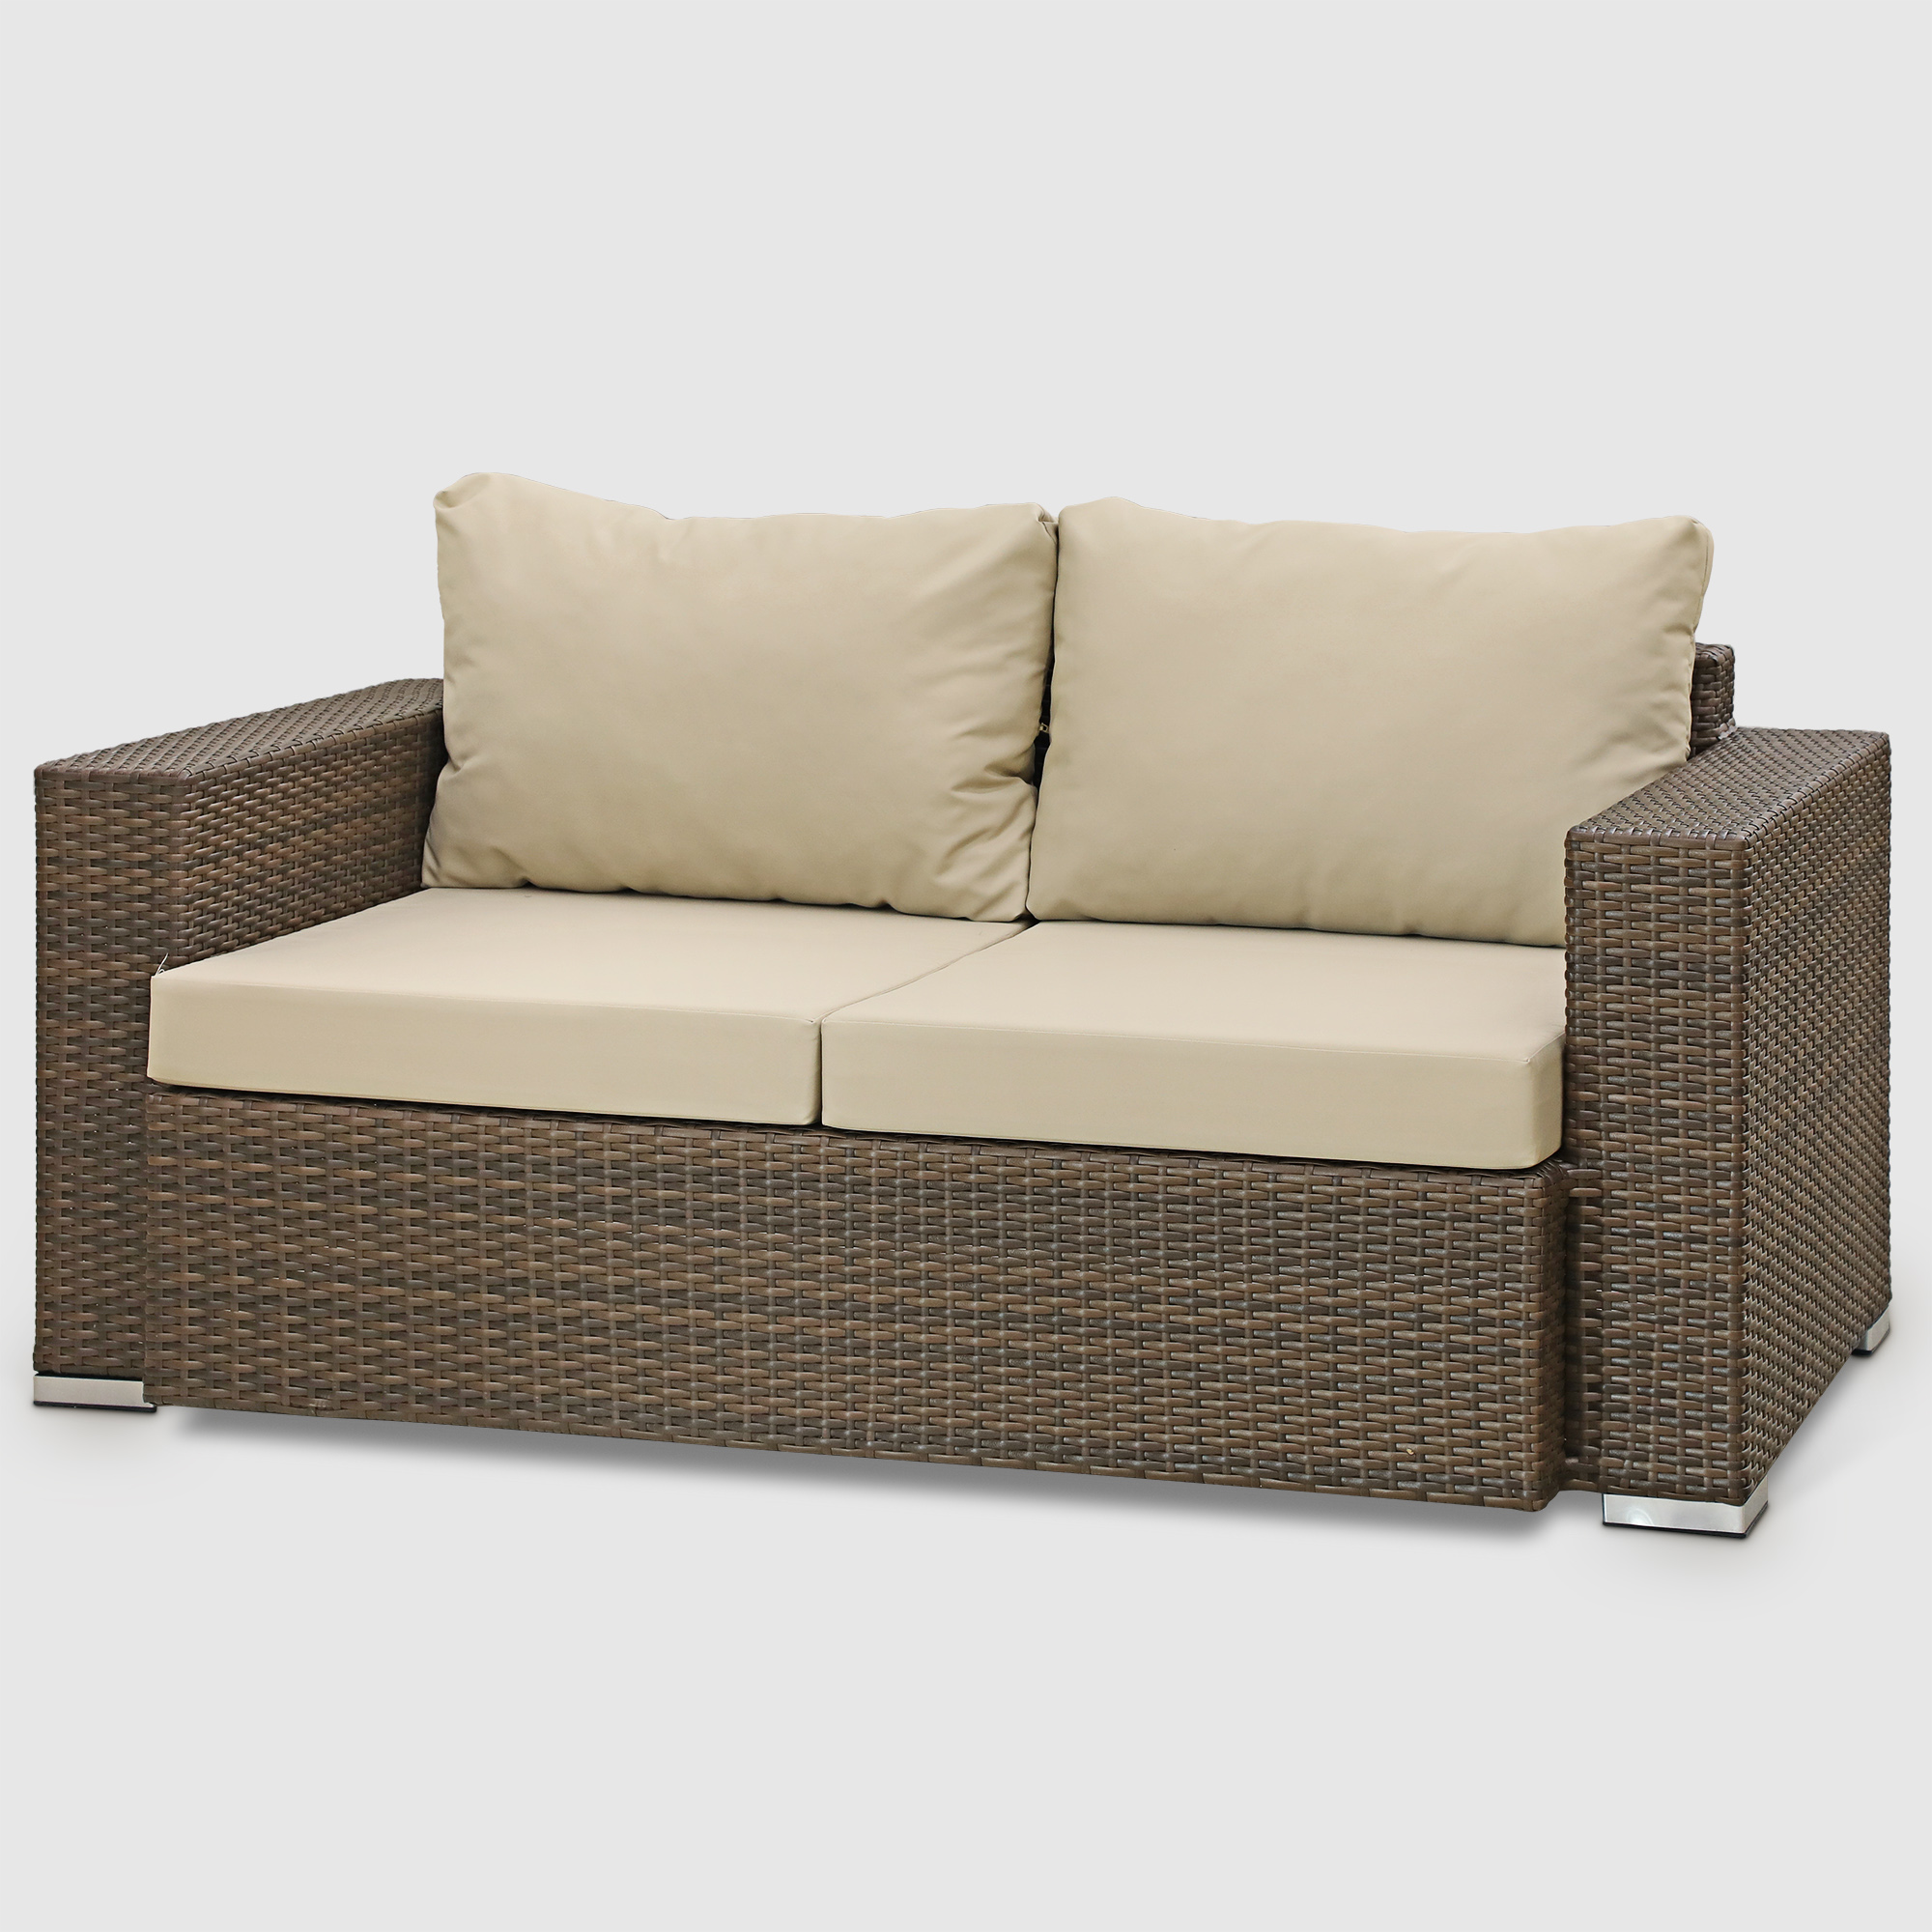 Комплект мебели Ns Rattan Cleo коричнево-бежевый 7 предметов, цвет коричневый, размер 199х68х72 - фото 7